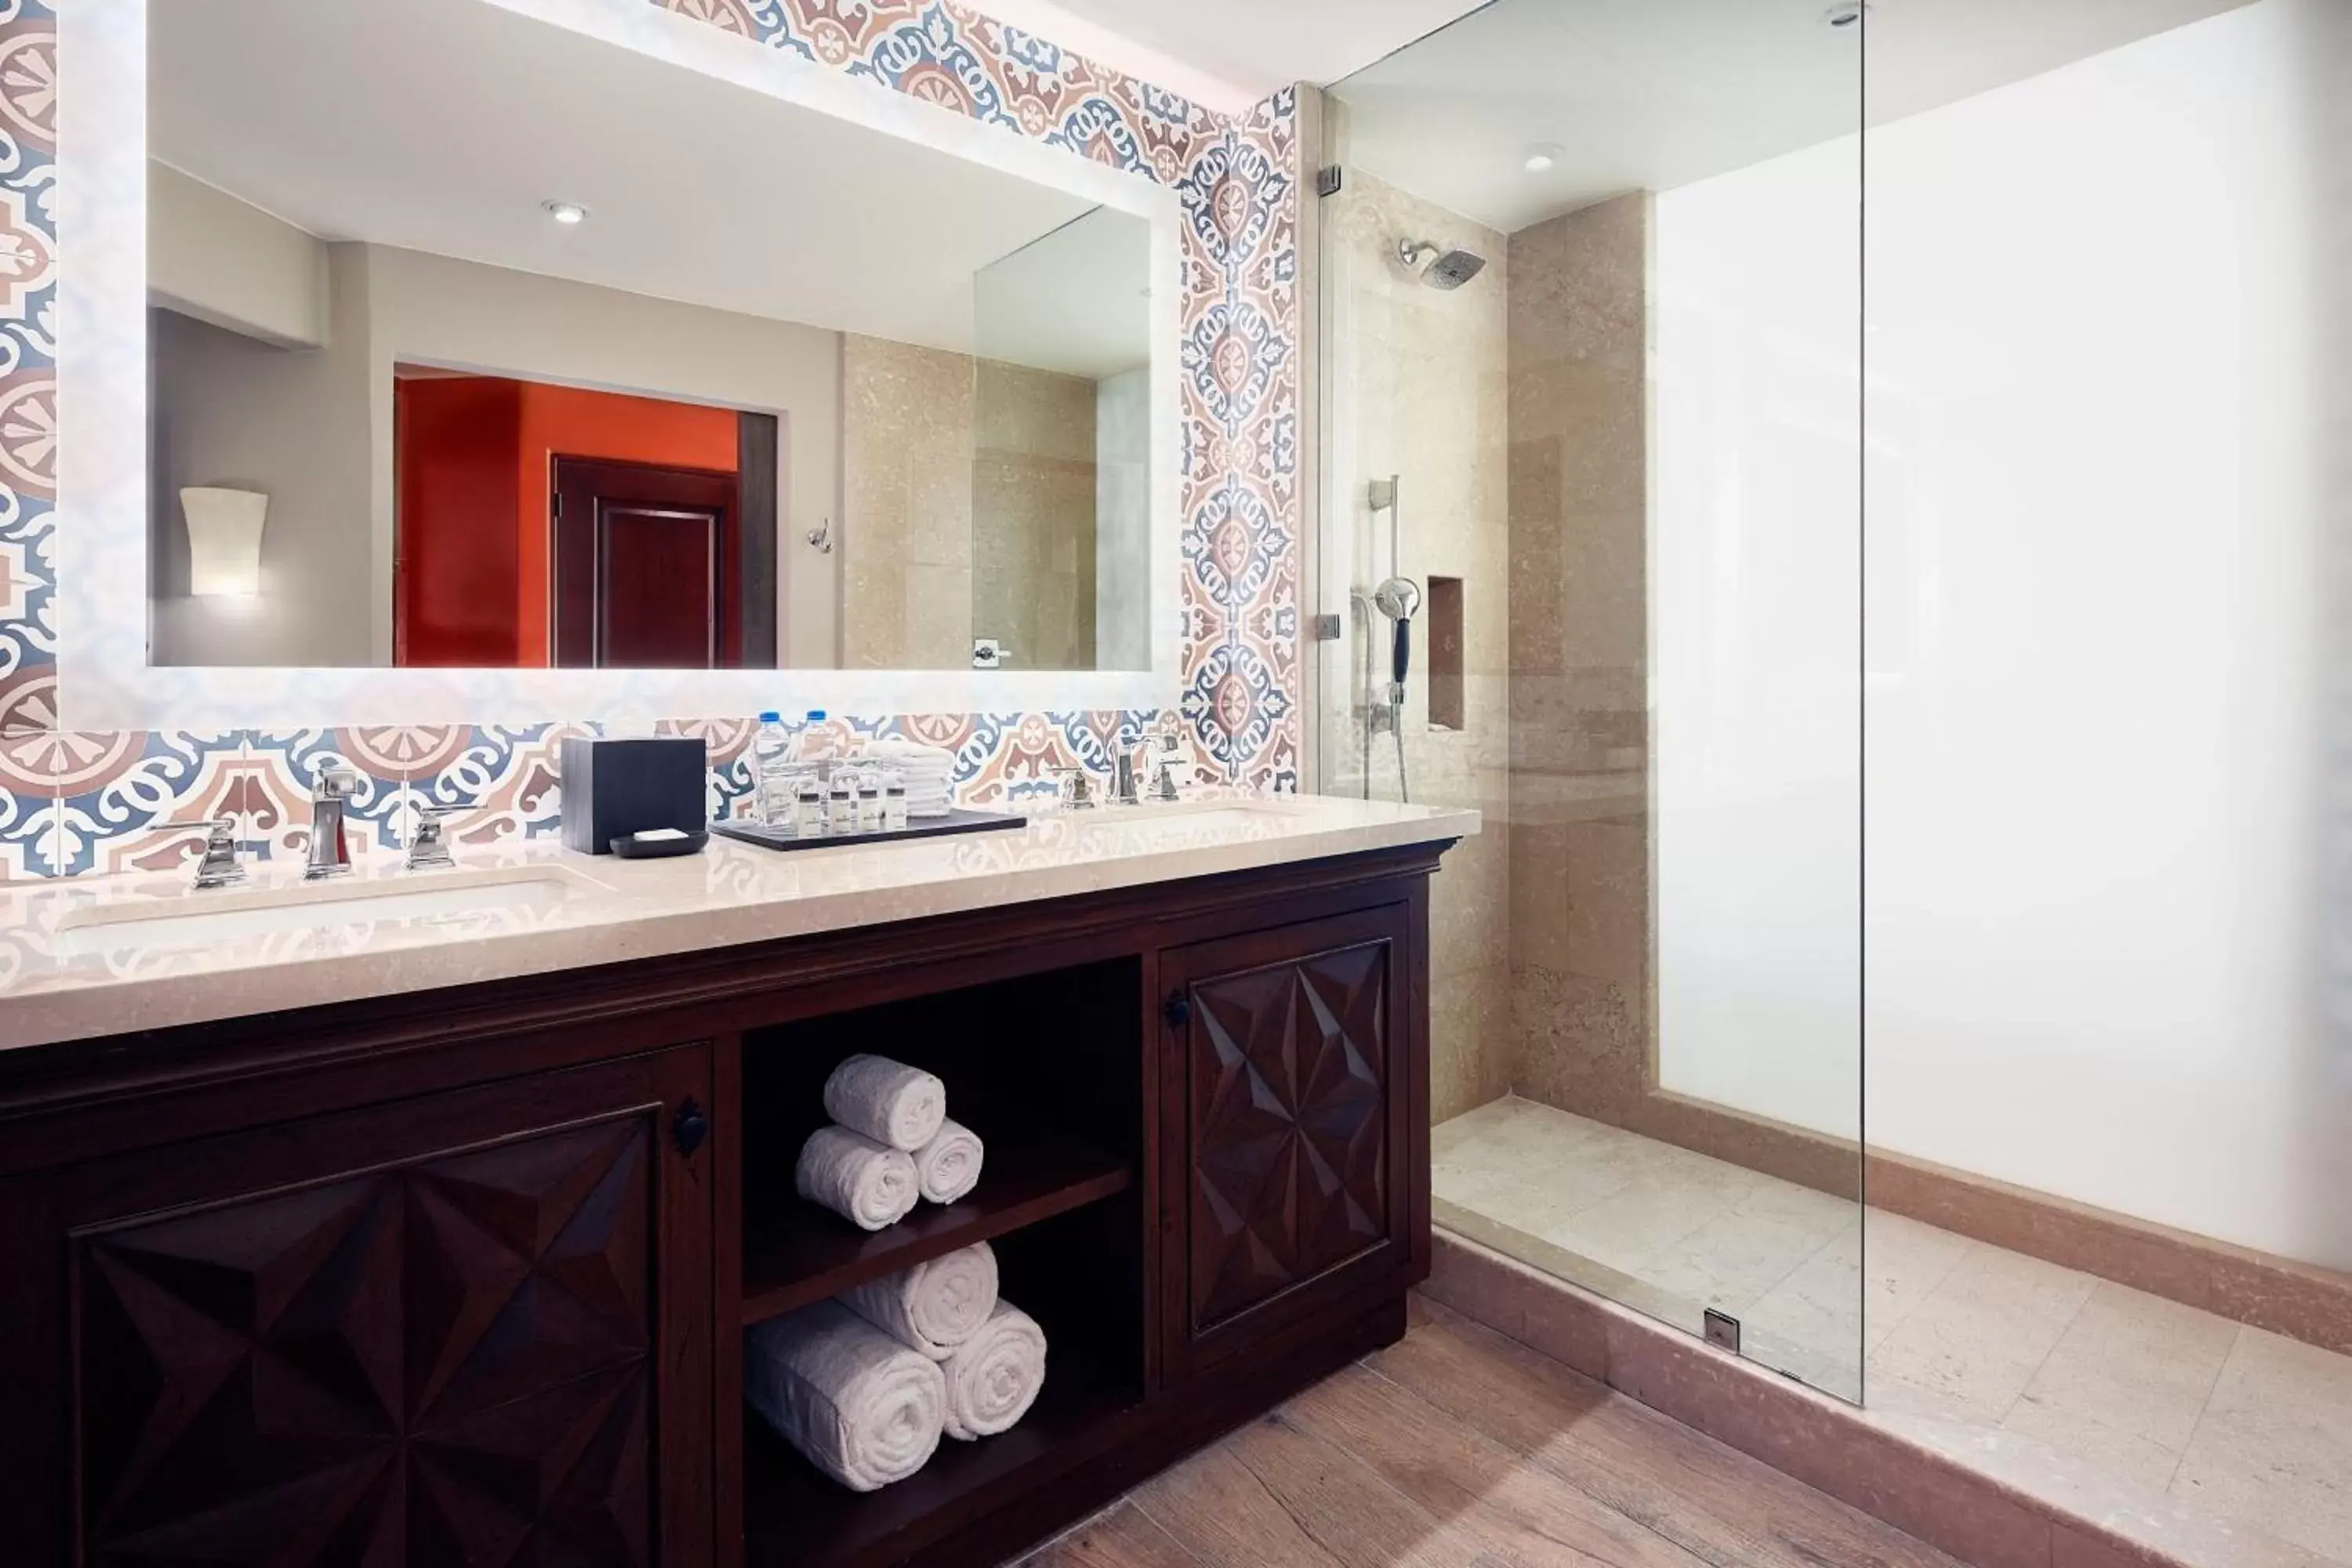 Photo of the whole room, Bathroom in Hacienda del Mar Los Cabos